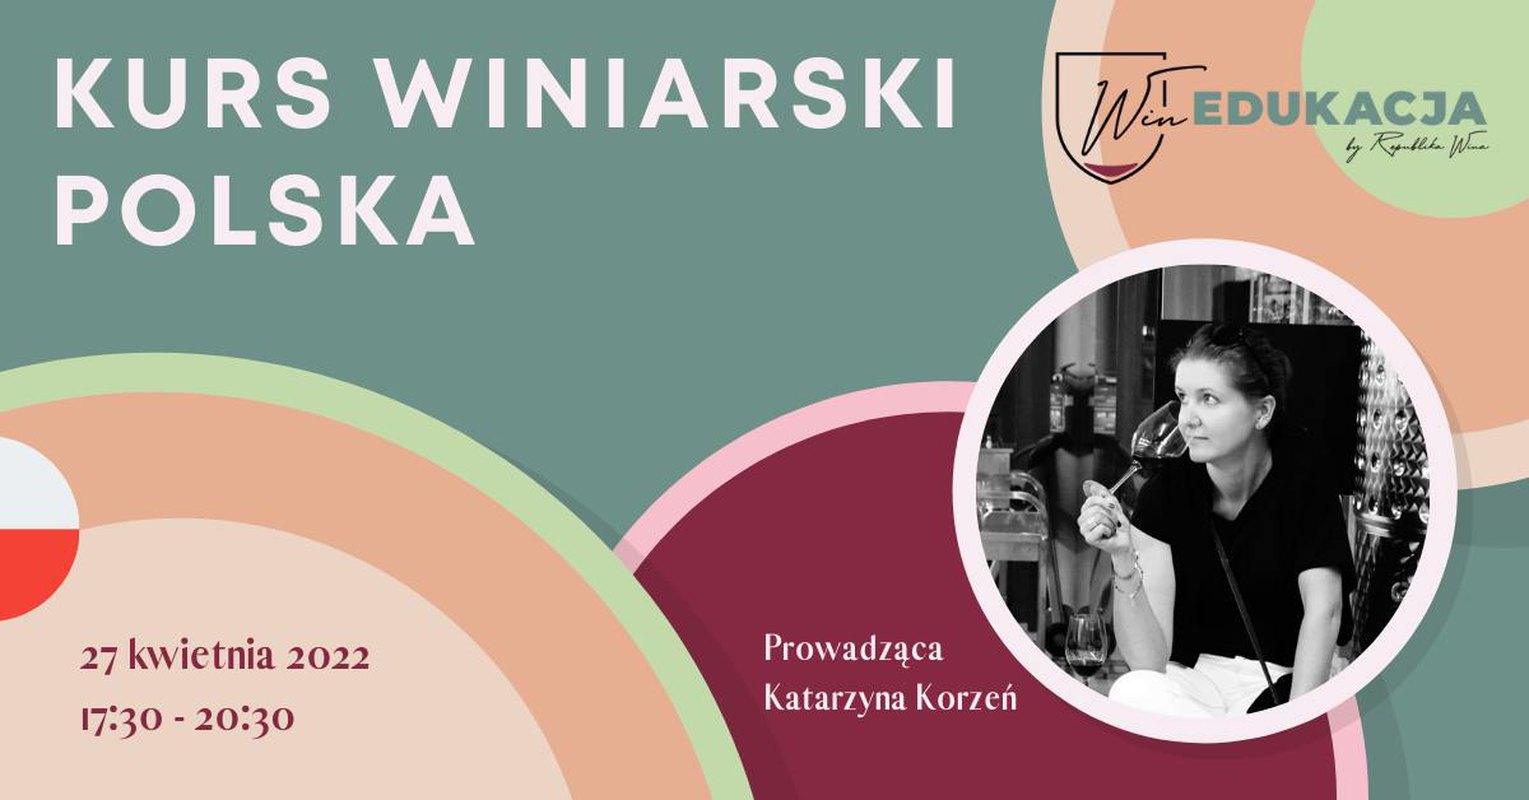 Kurs winiarski Polska - poziom średniozaawansowany